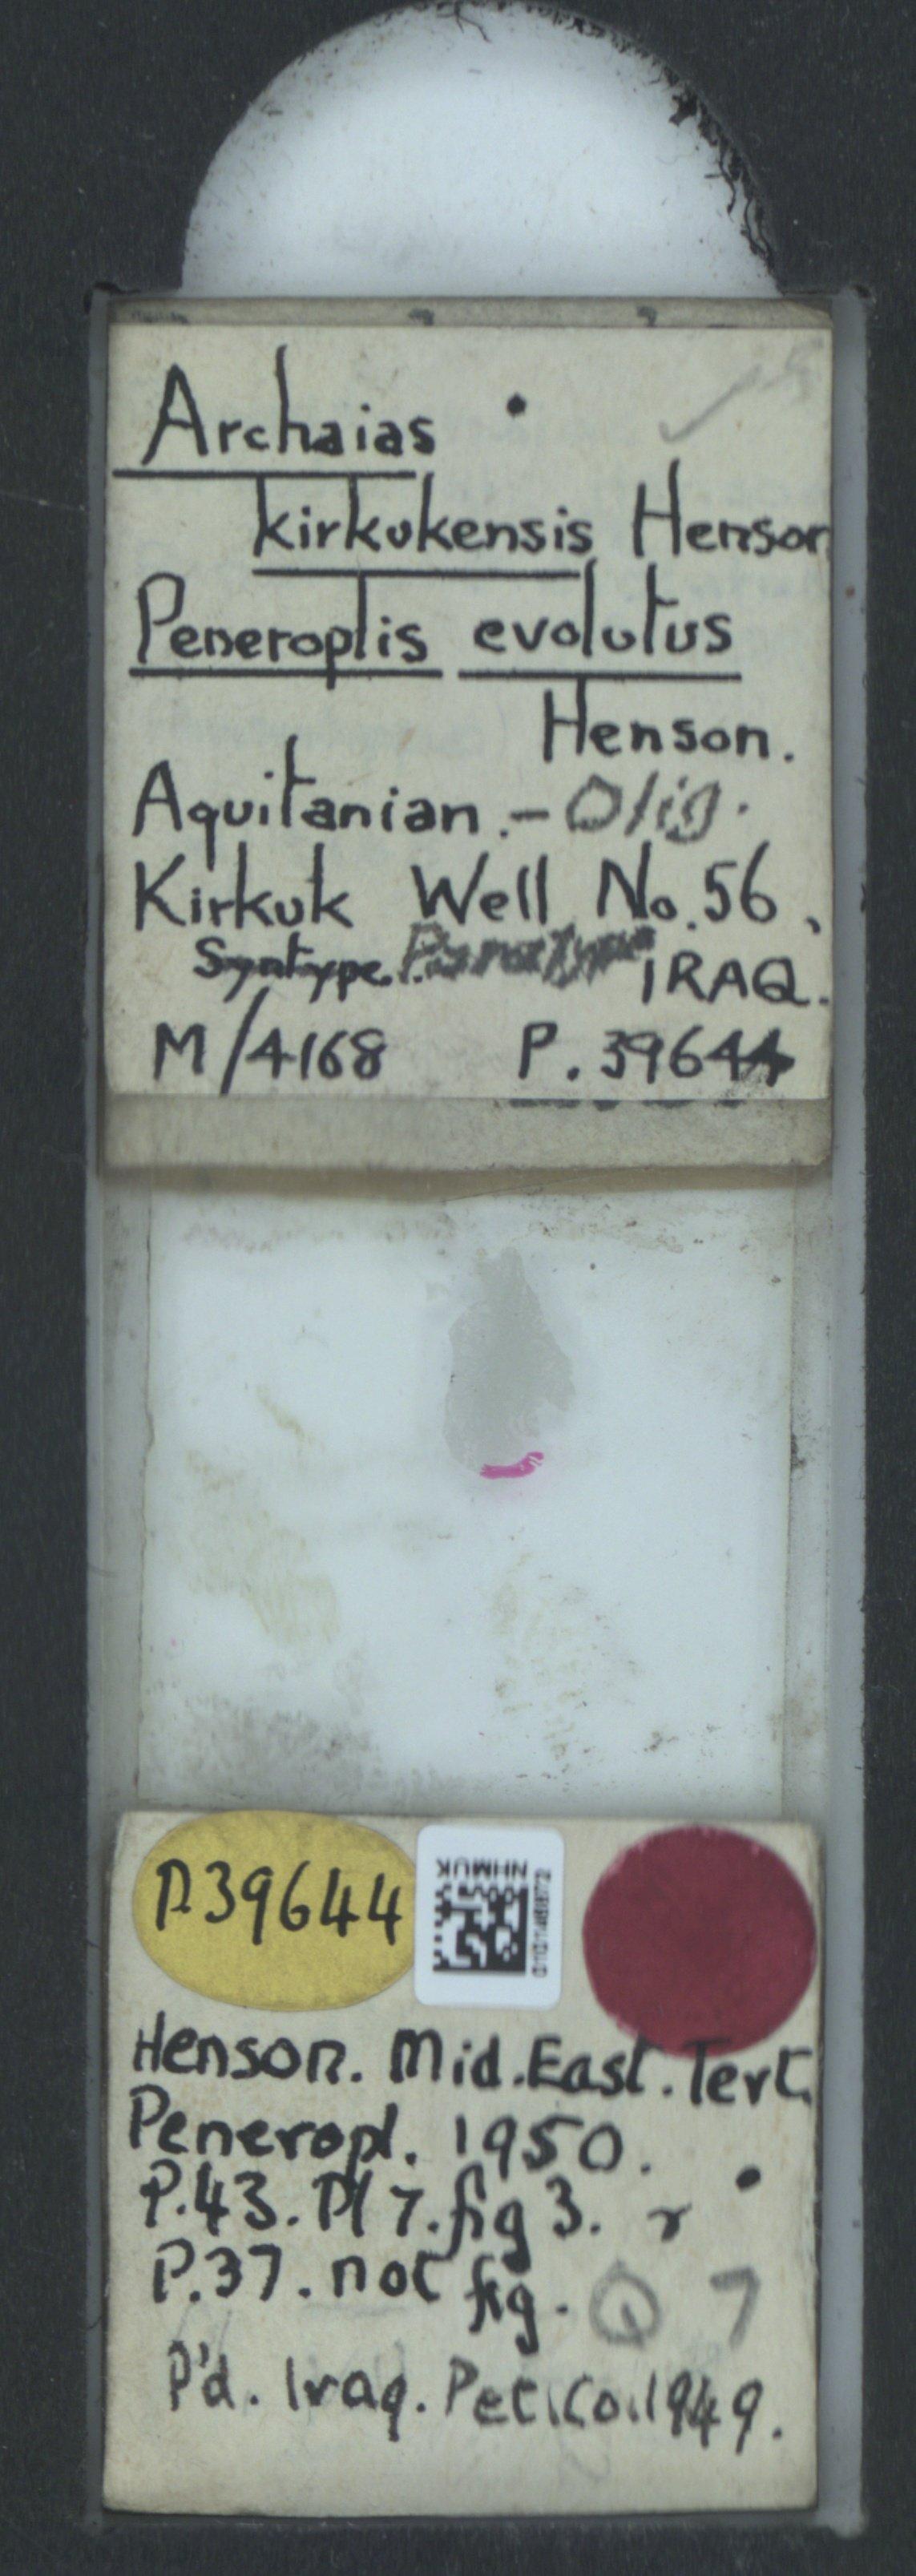 To NHMUK collection (Archaias kirkukensis Henson, 1950; Paratype; NHMUK:ecatalogue:2323647)